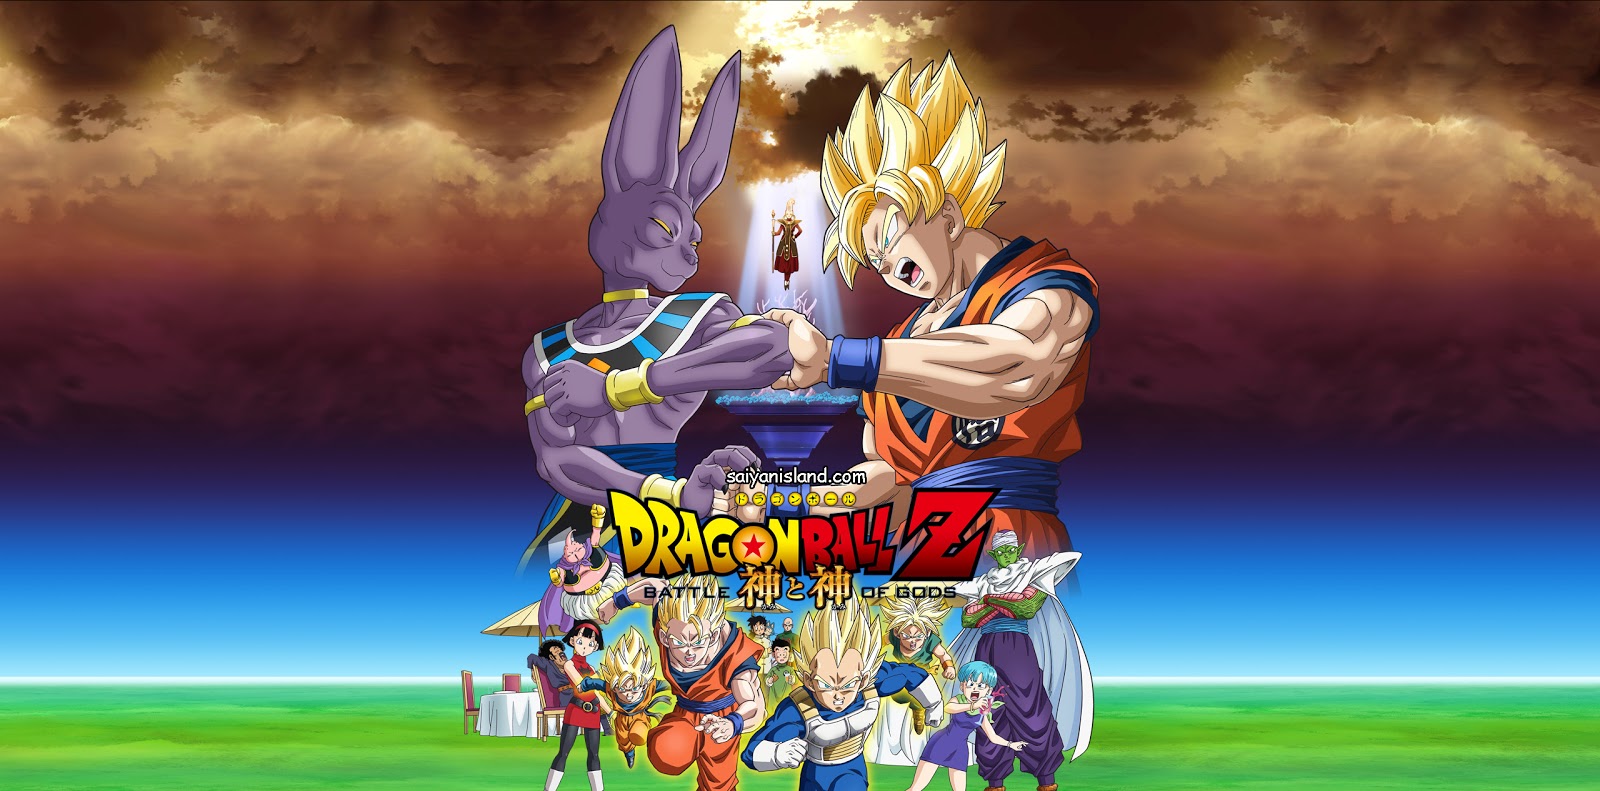 Dragon Ball Z: A Batalha dos Deuses - duas dublagens (Cinema e DVD) 